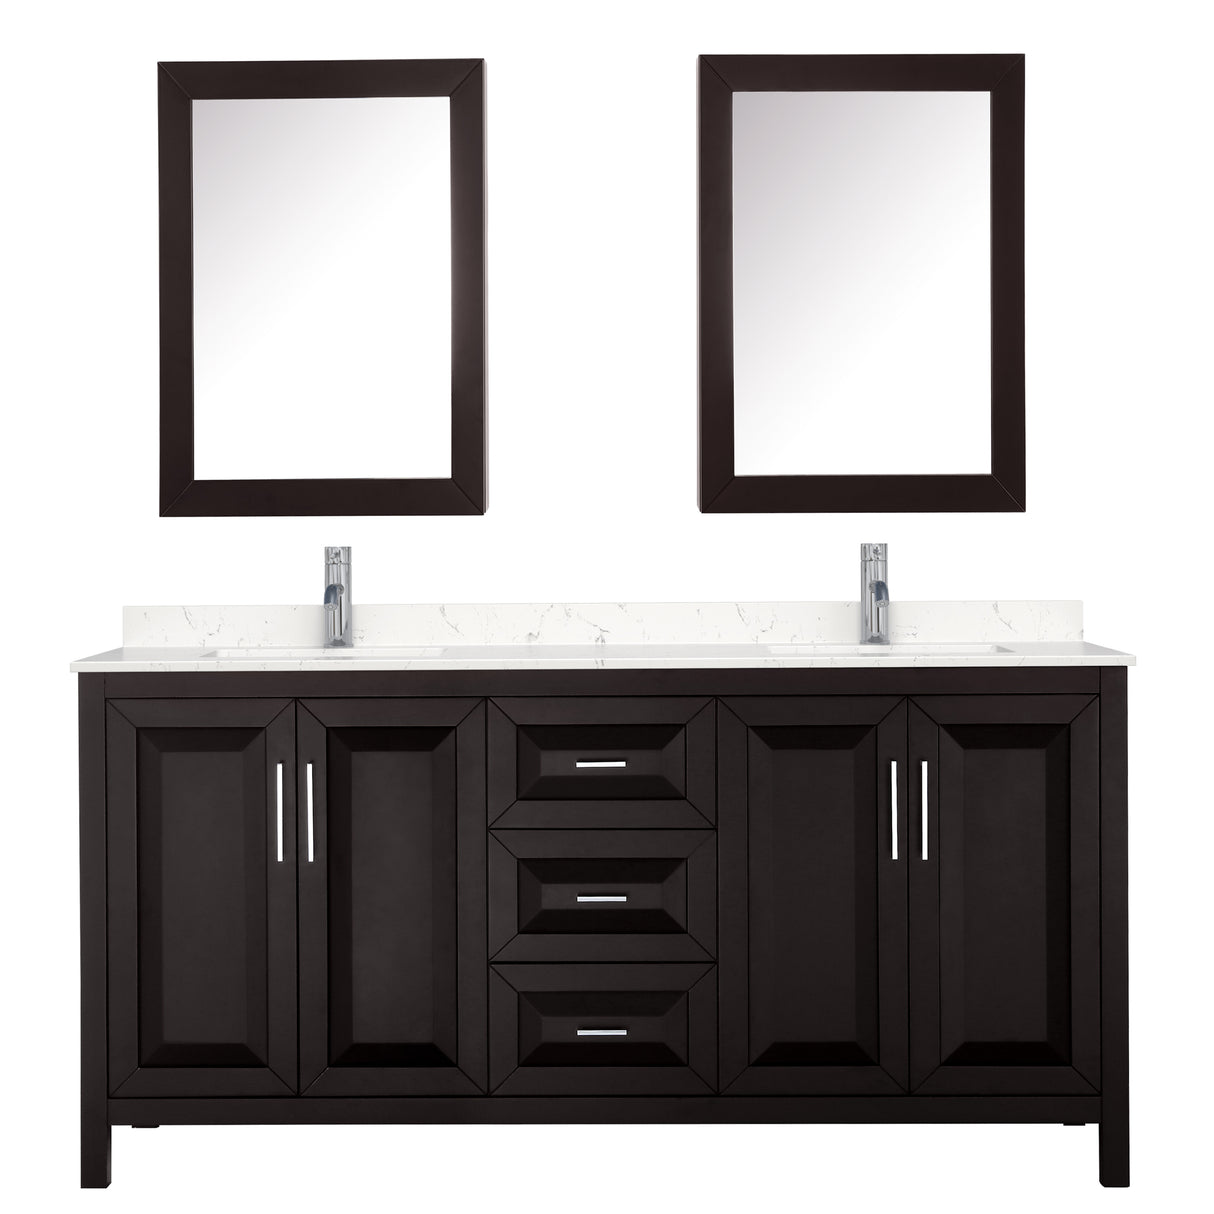 Daria 72 Inch Double Bathroom Vanity in Dark Espresso Carrara Cultured Marble Countertop Undermount Square Sinks Medicine Cabinets